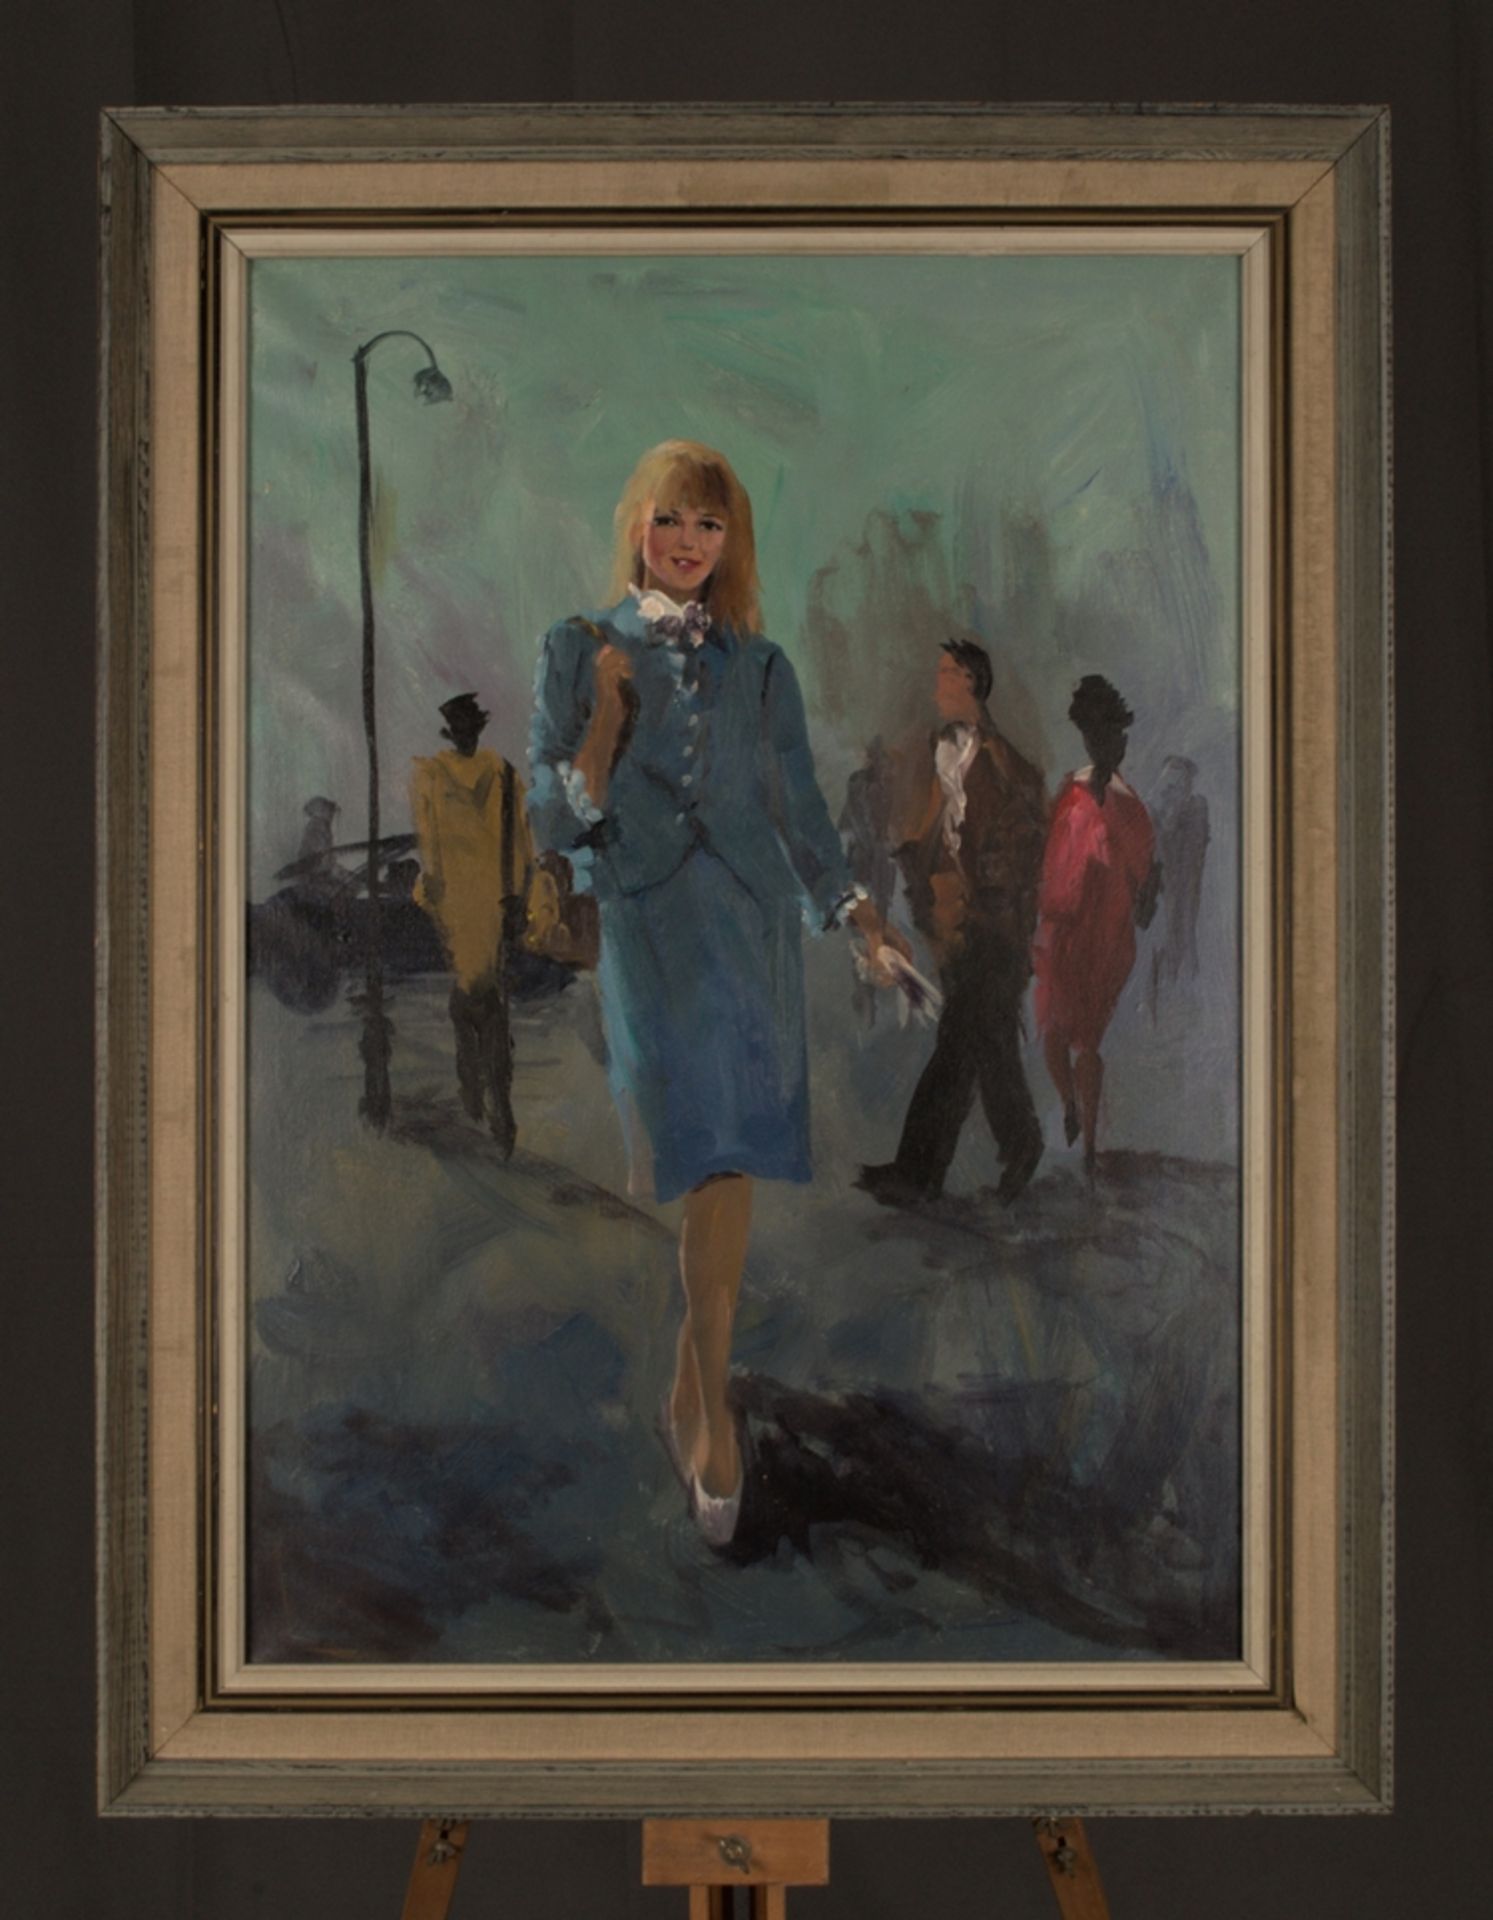 "Stewardess". Gemälde, Öl auf Leinwand, ca. 70 x 50 cm, unsignierte, akademische Malweise der 1960er